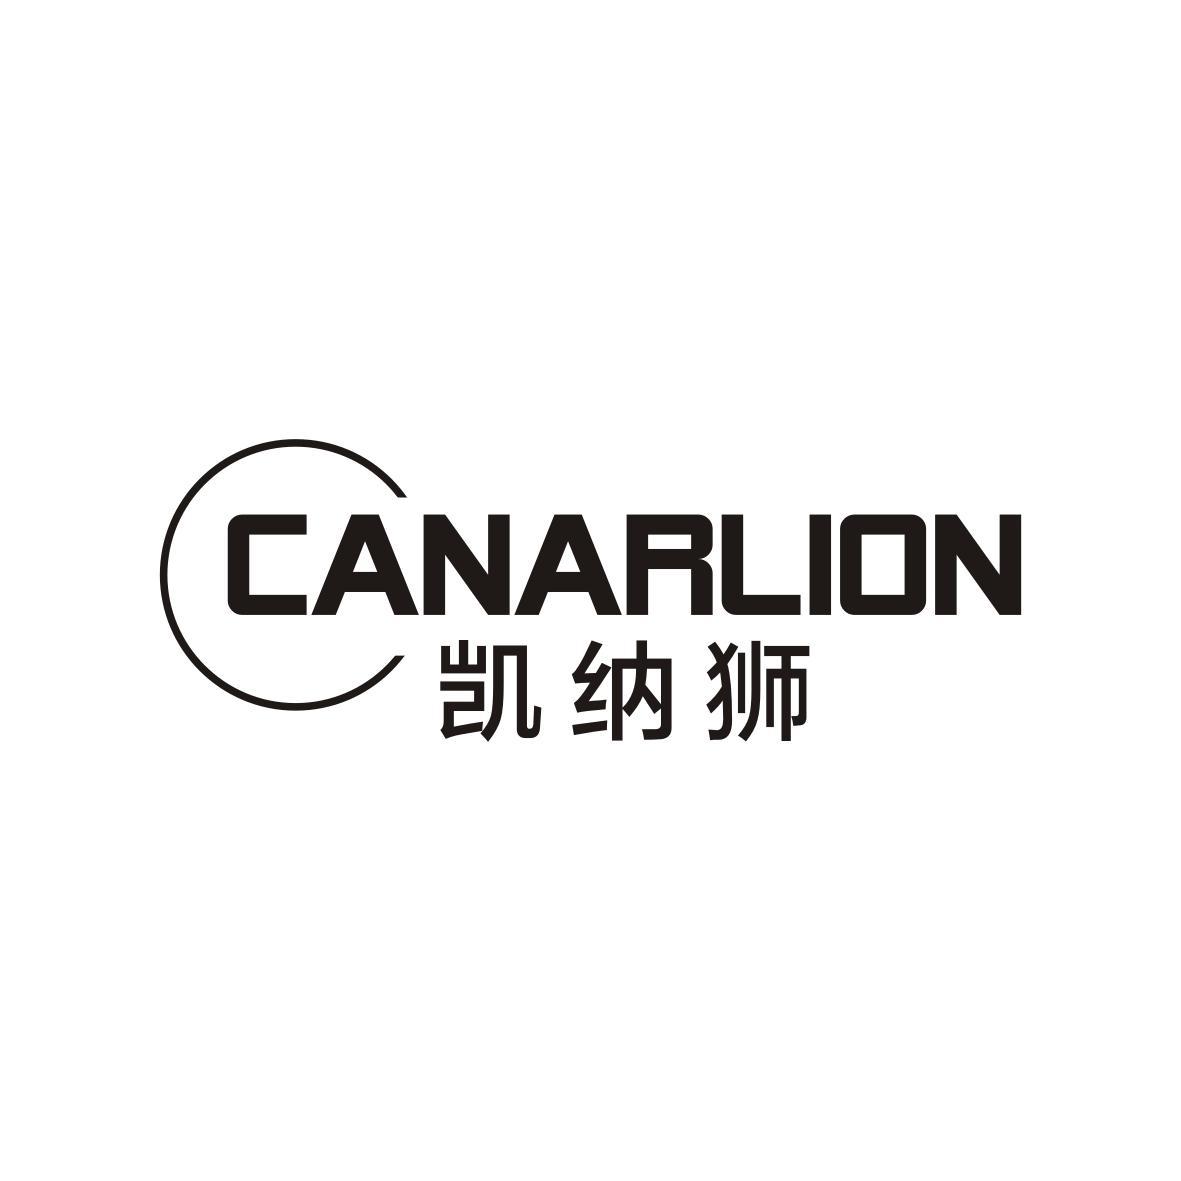 赖秋茸商标凯纳狮 CANARLION（25类）商标转让流程及费用